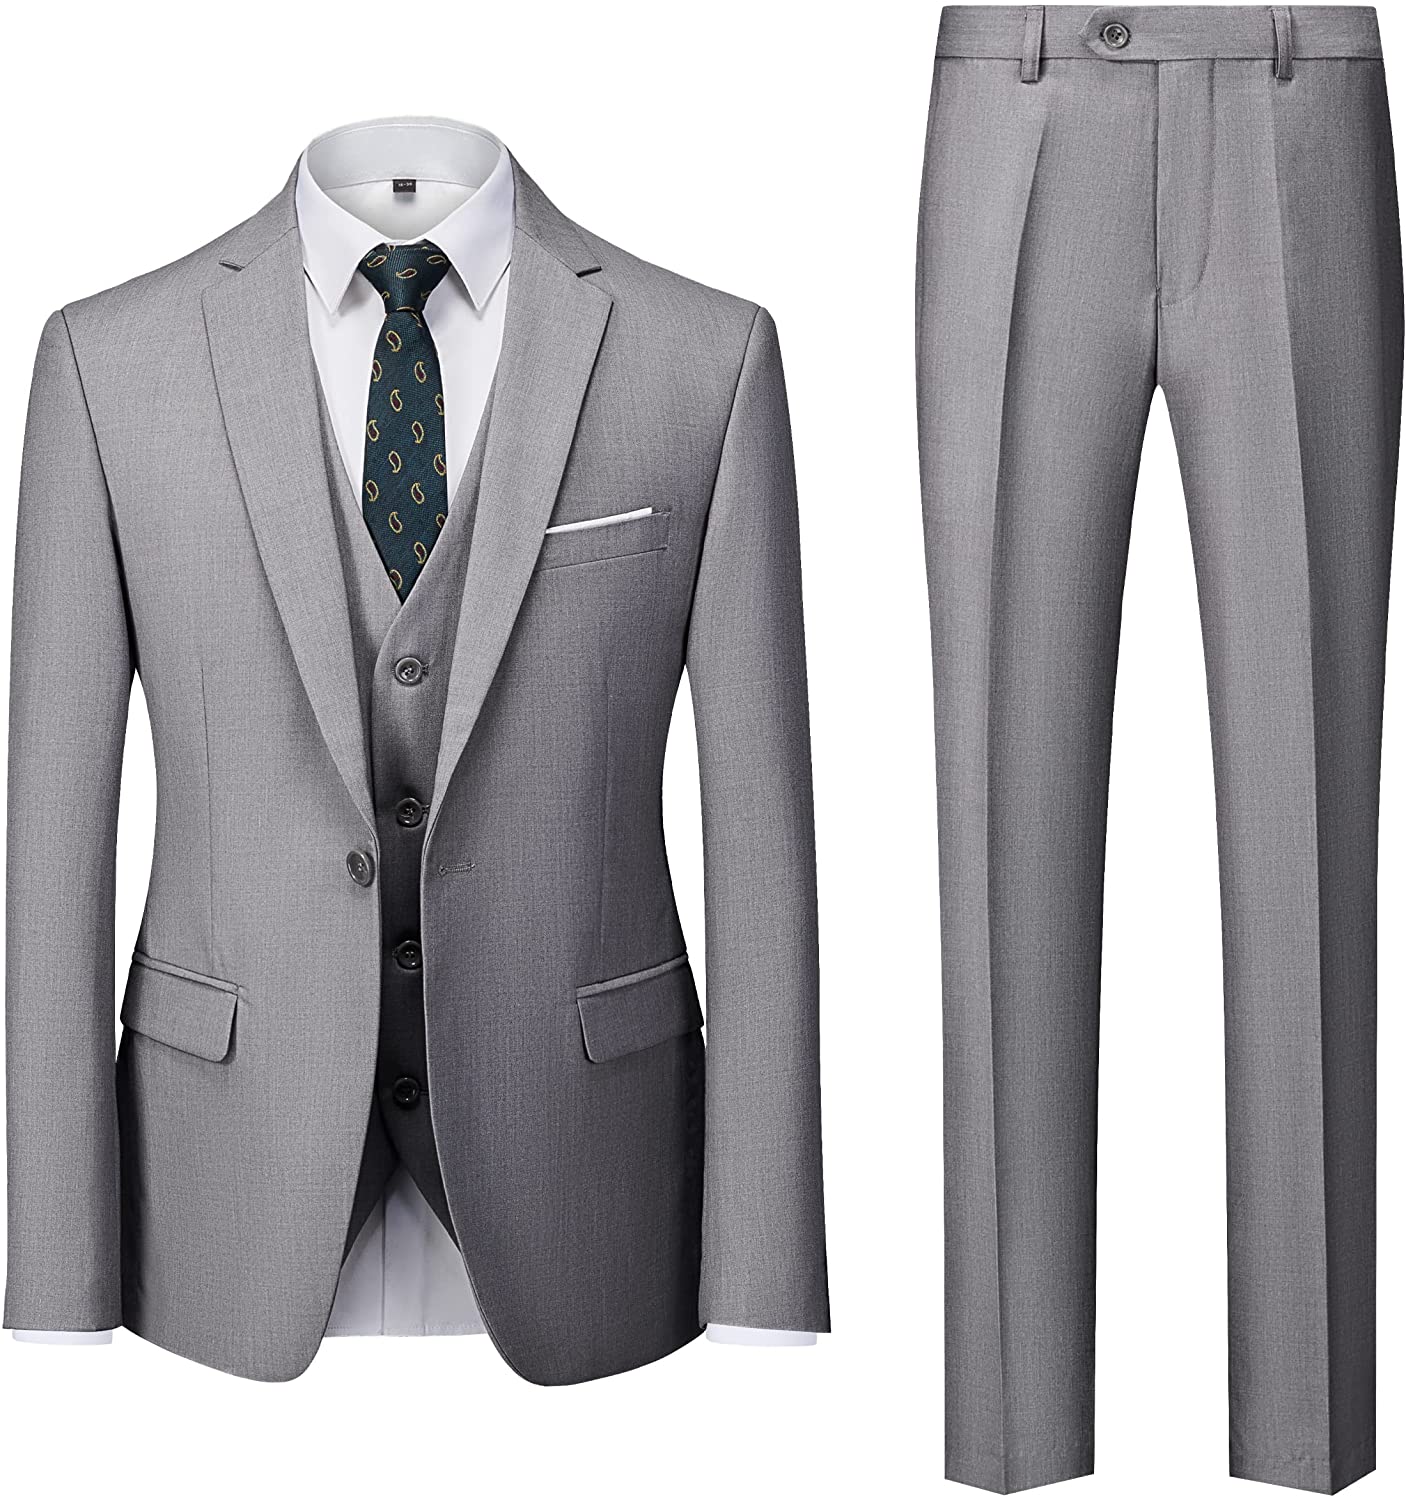 UNINUKOO Men Suits Slim Fit 3 Piece 1 Button Wedding Formal Business Tuxedo  Suit Jacket Pants Vest Set US Size XS Beige at  Men's Clothing store